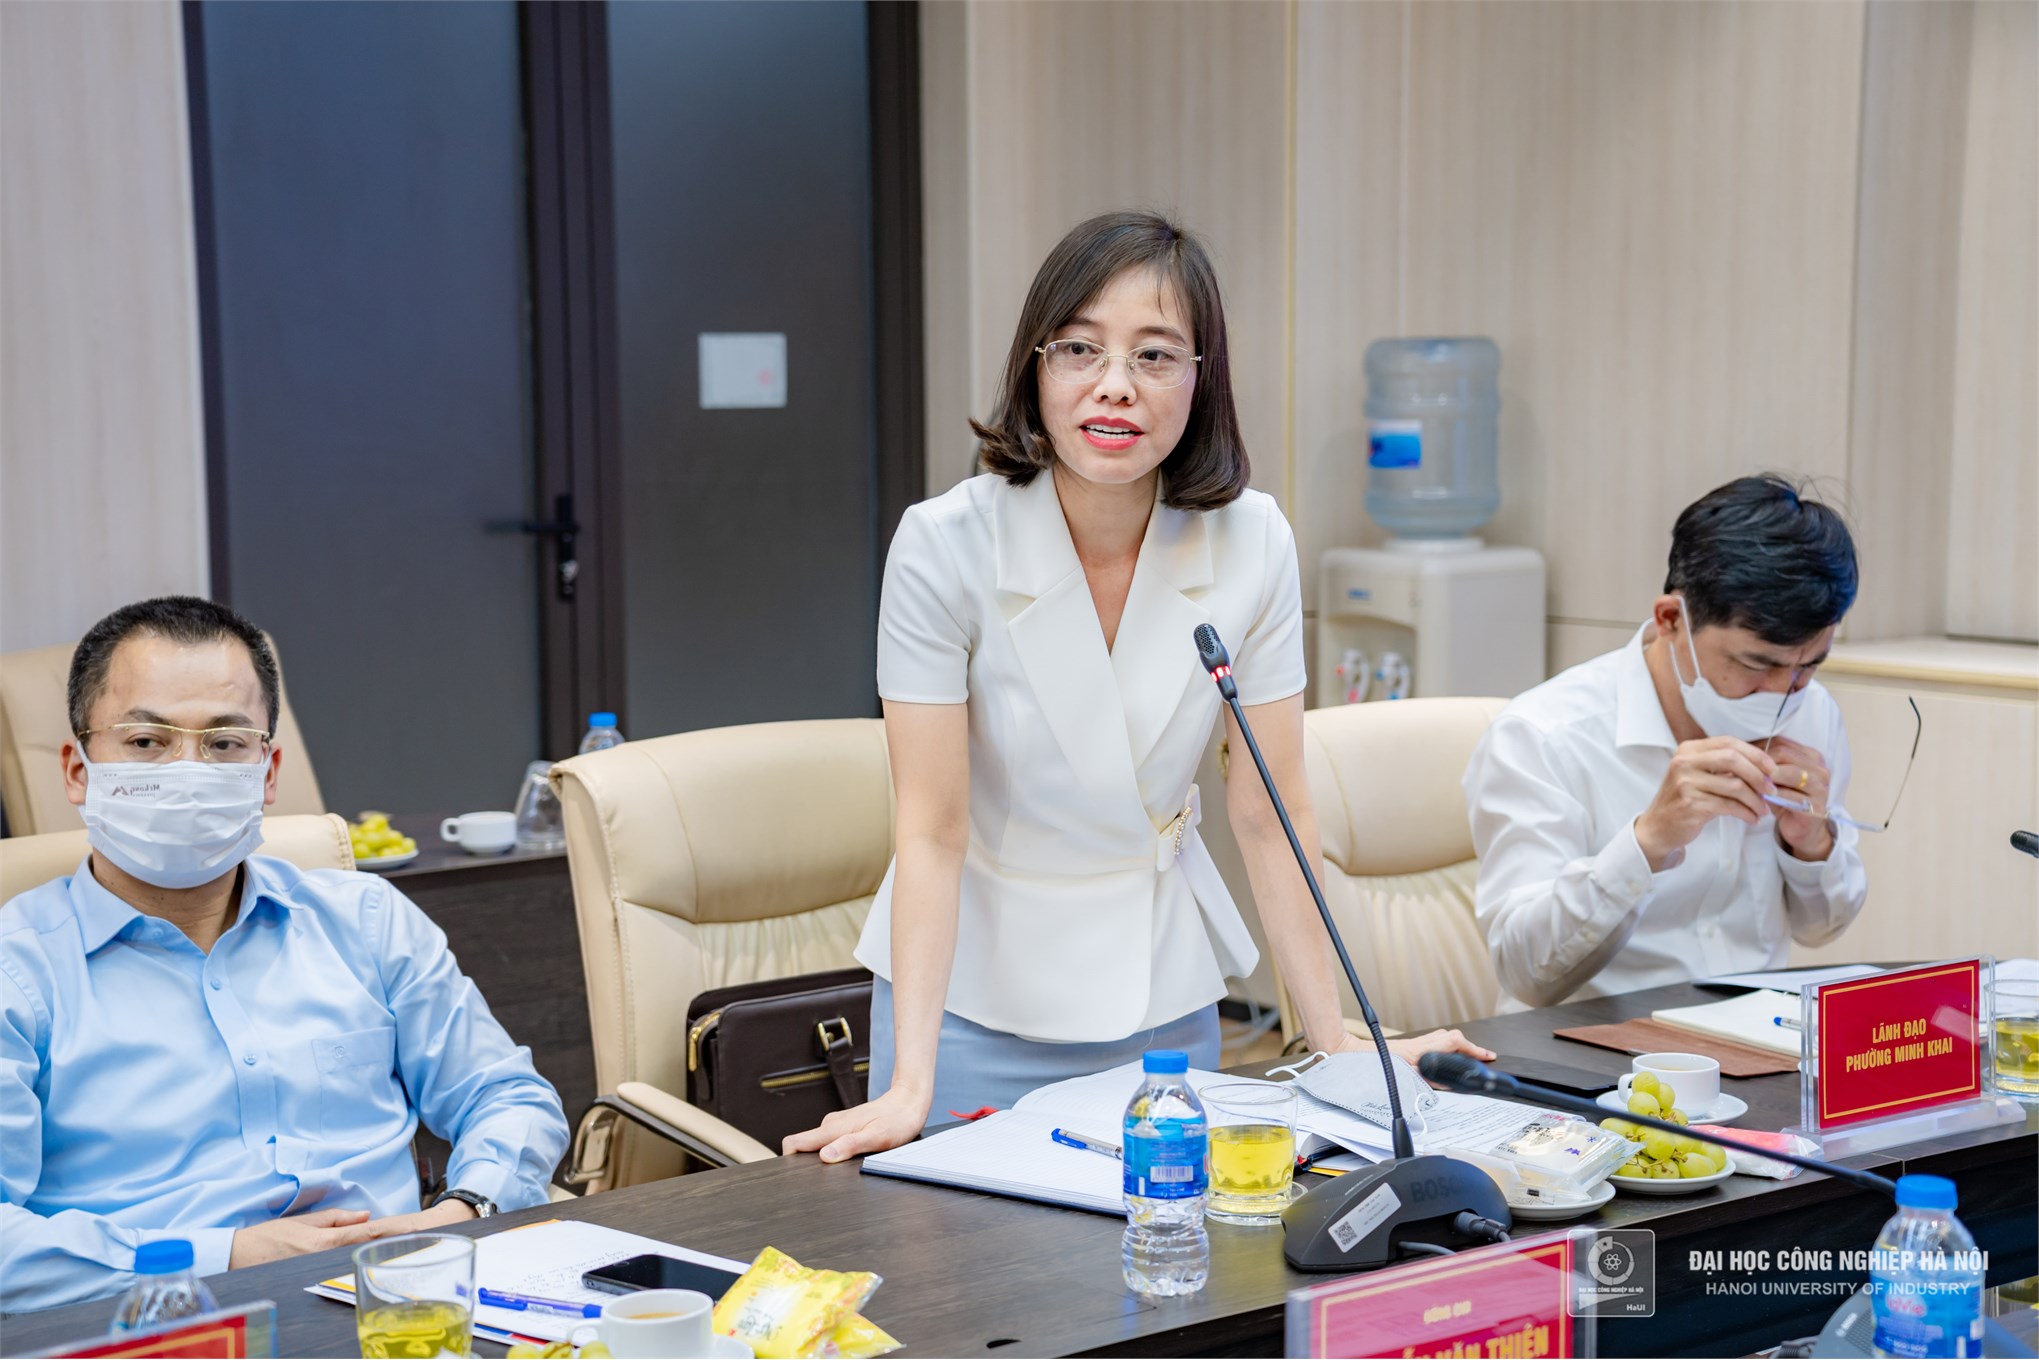 Đồng chí Nguyễn Văn Phong - Phó Bí thư Thành ủy Hà Nội kiểm tra công tác phòng chống dịch Covid-19 tại Đại học Công nghiệp Hà Nội